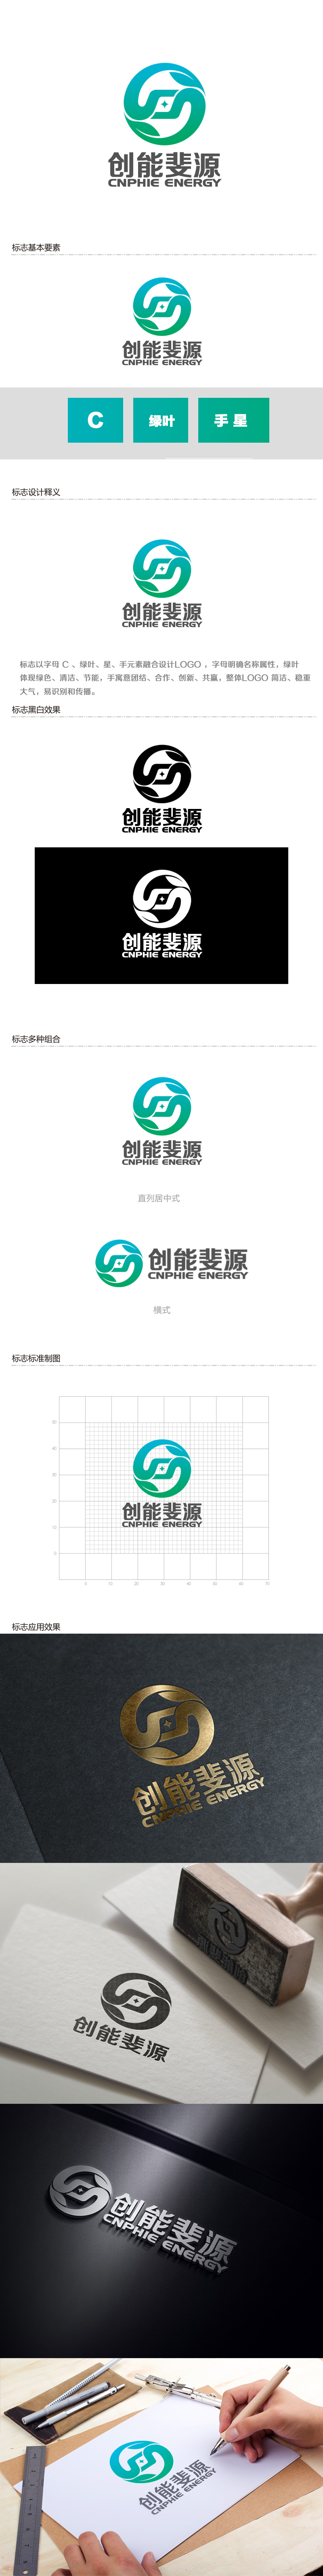 余亮亮的中文：创能斐源；英文：cnφe energy或者cnphie energylogo设计